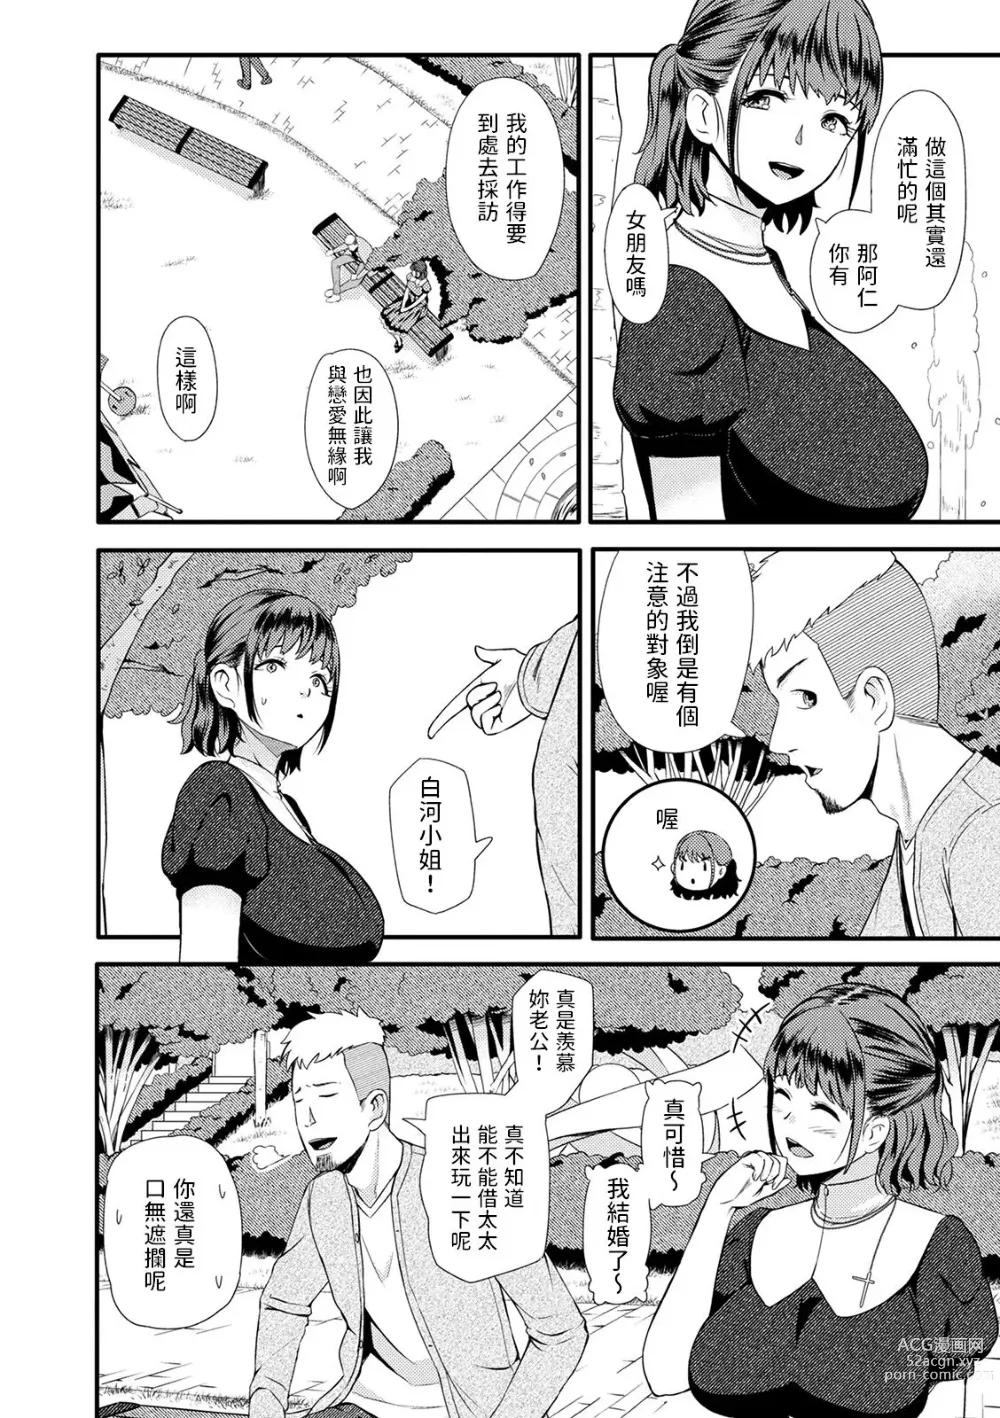 Page 2 of manga Therapist